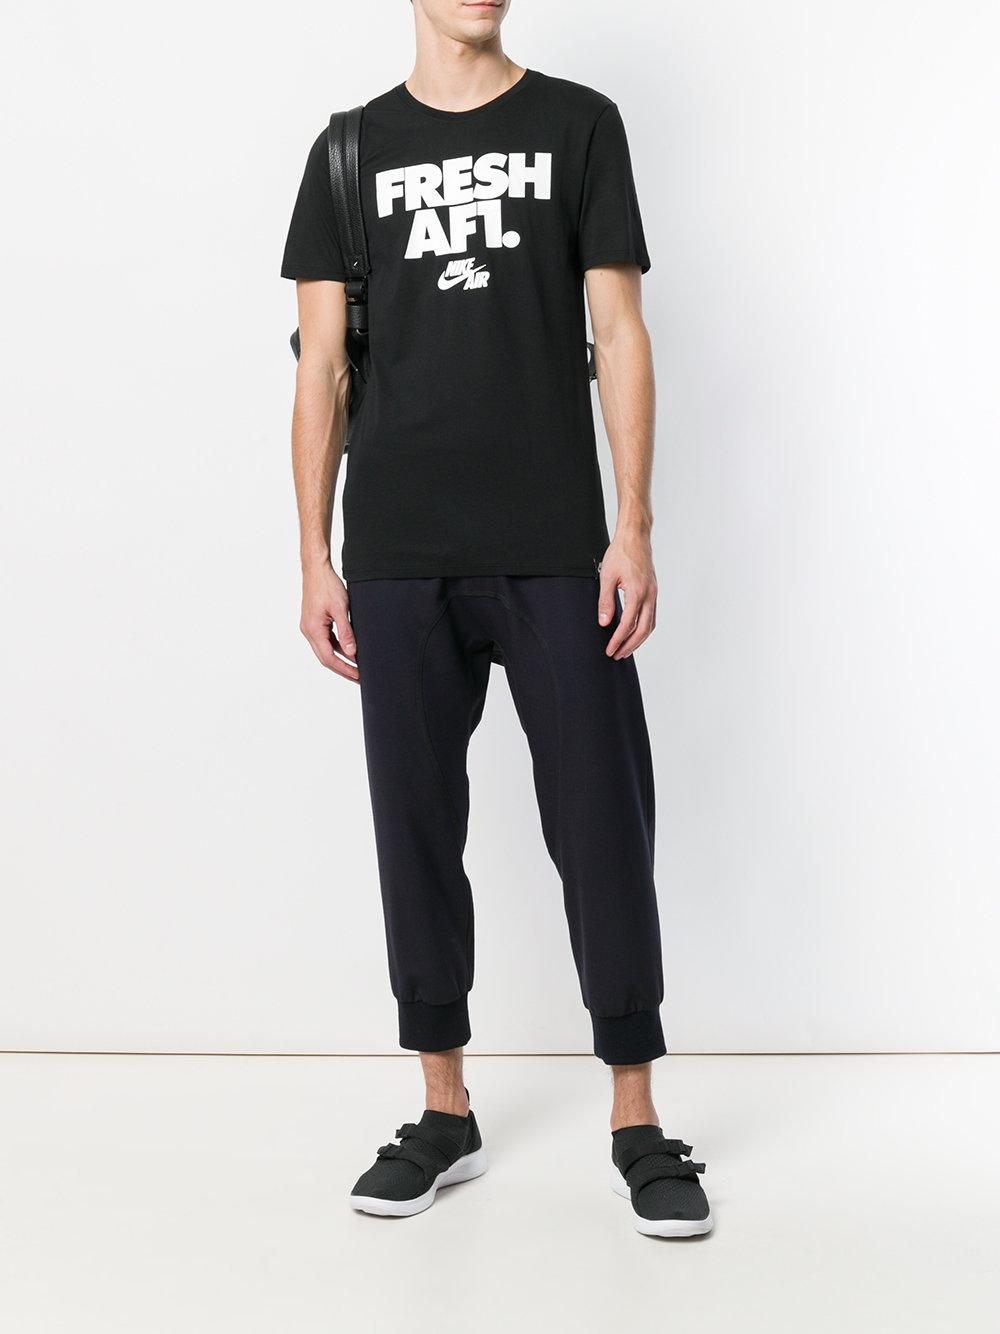 Nike Cotton Fresh Af1 T-shirt in Black for Men | Lyst Australia